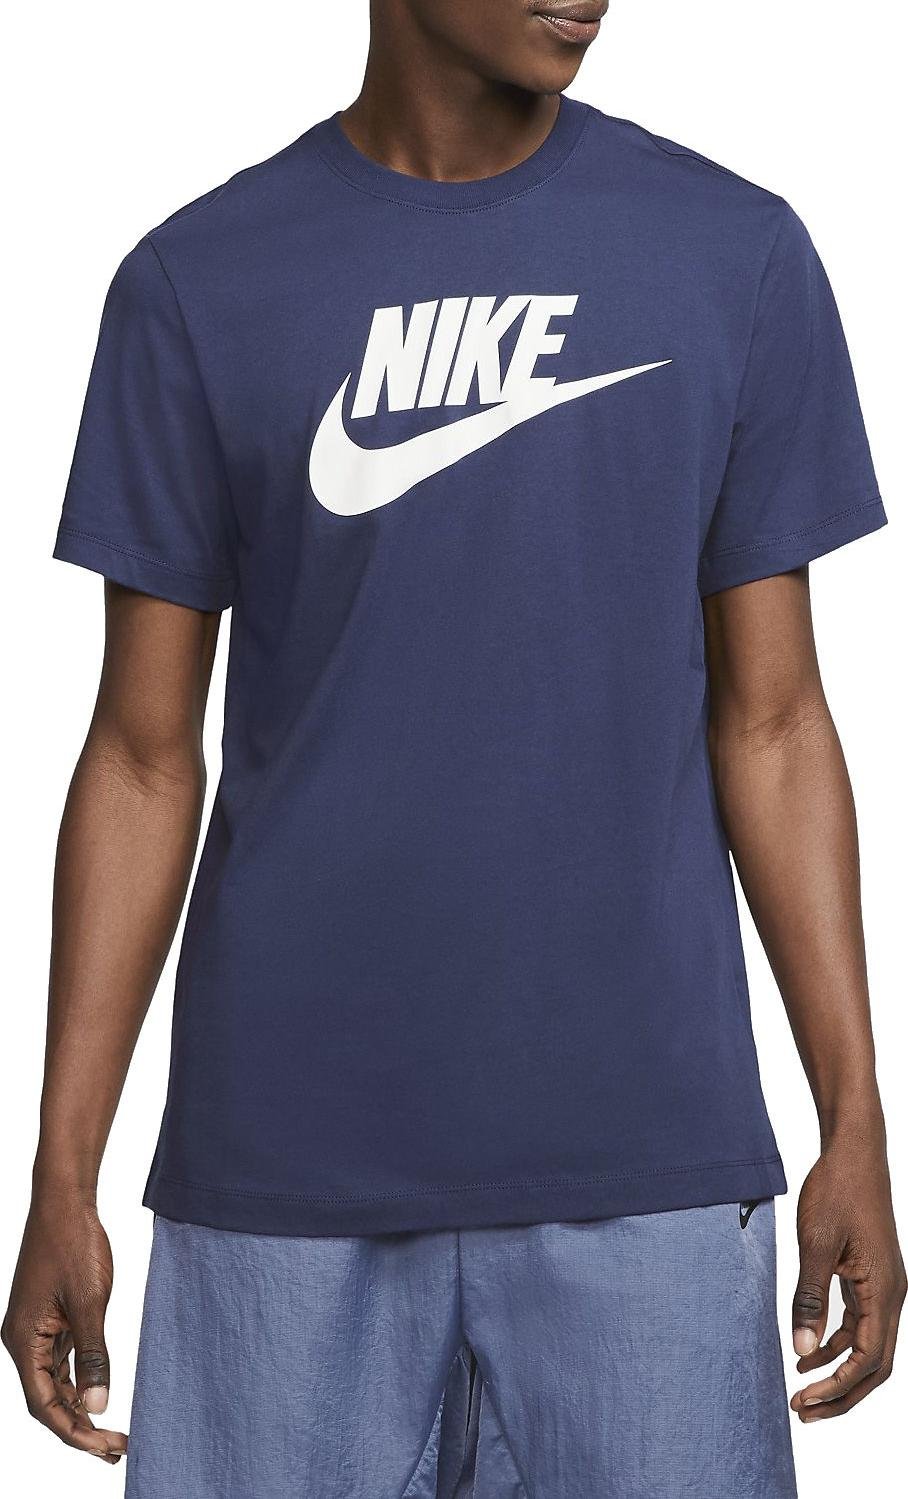 Majica Nike M NSW TEE ICON FUTURA